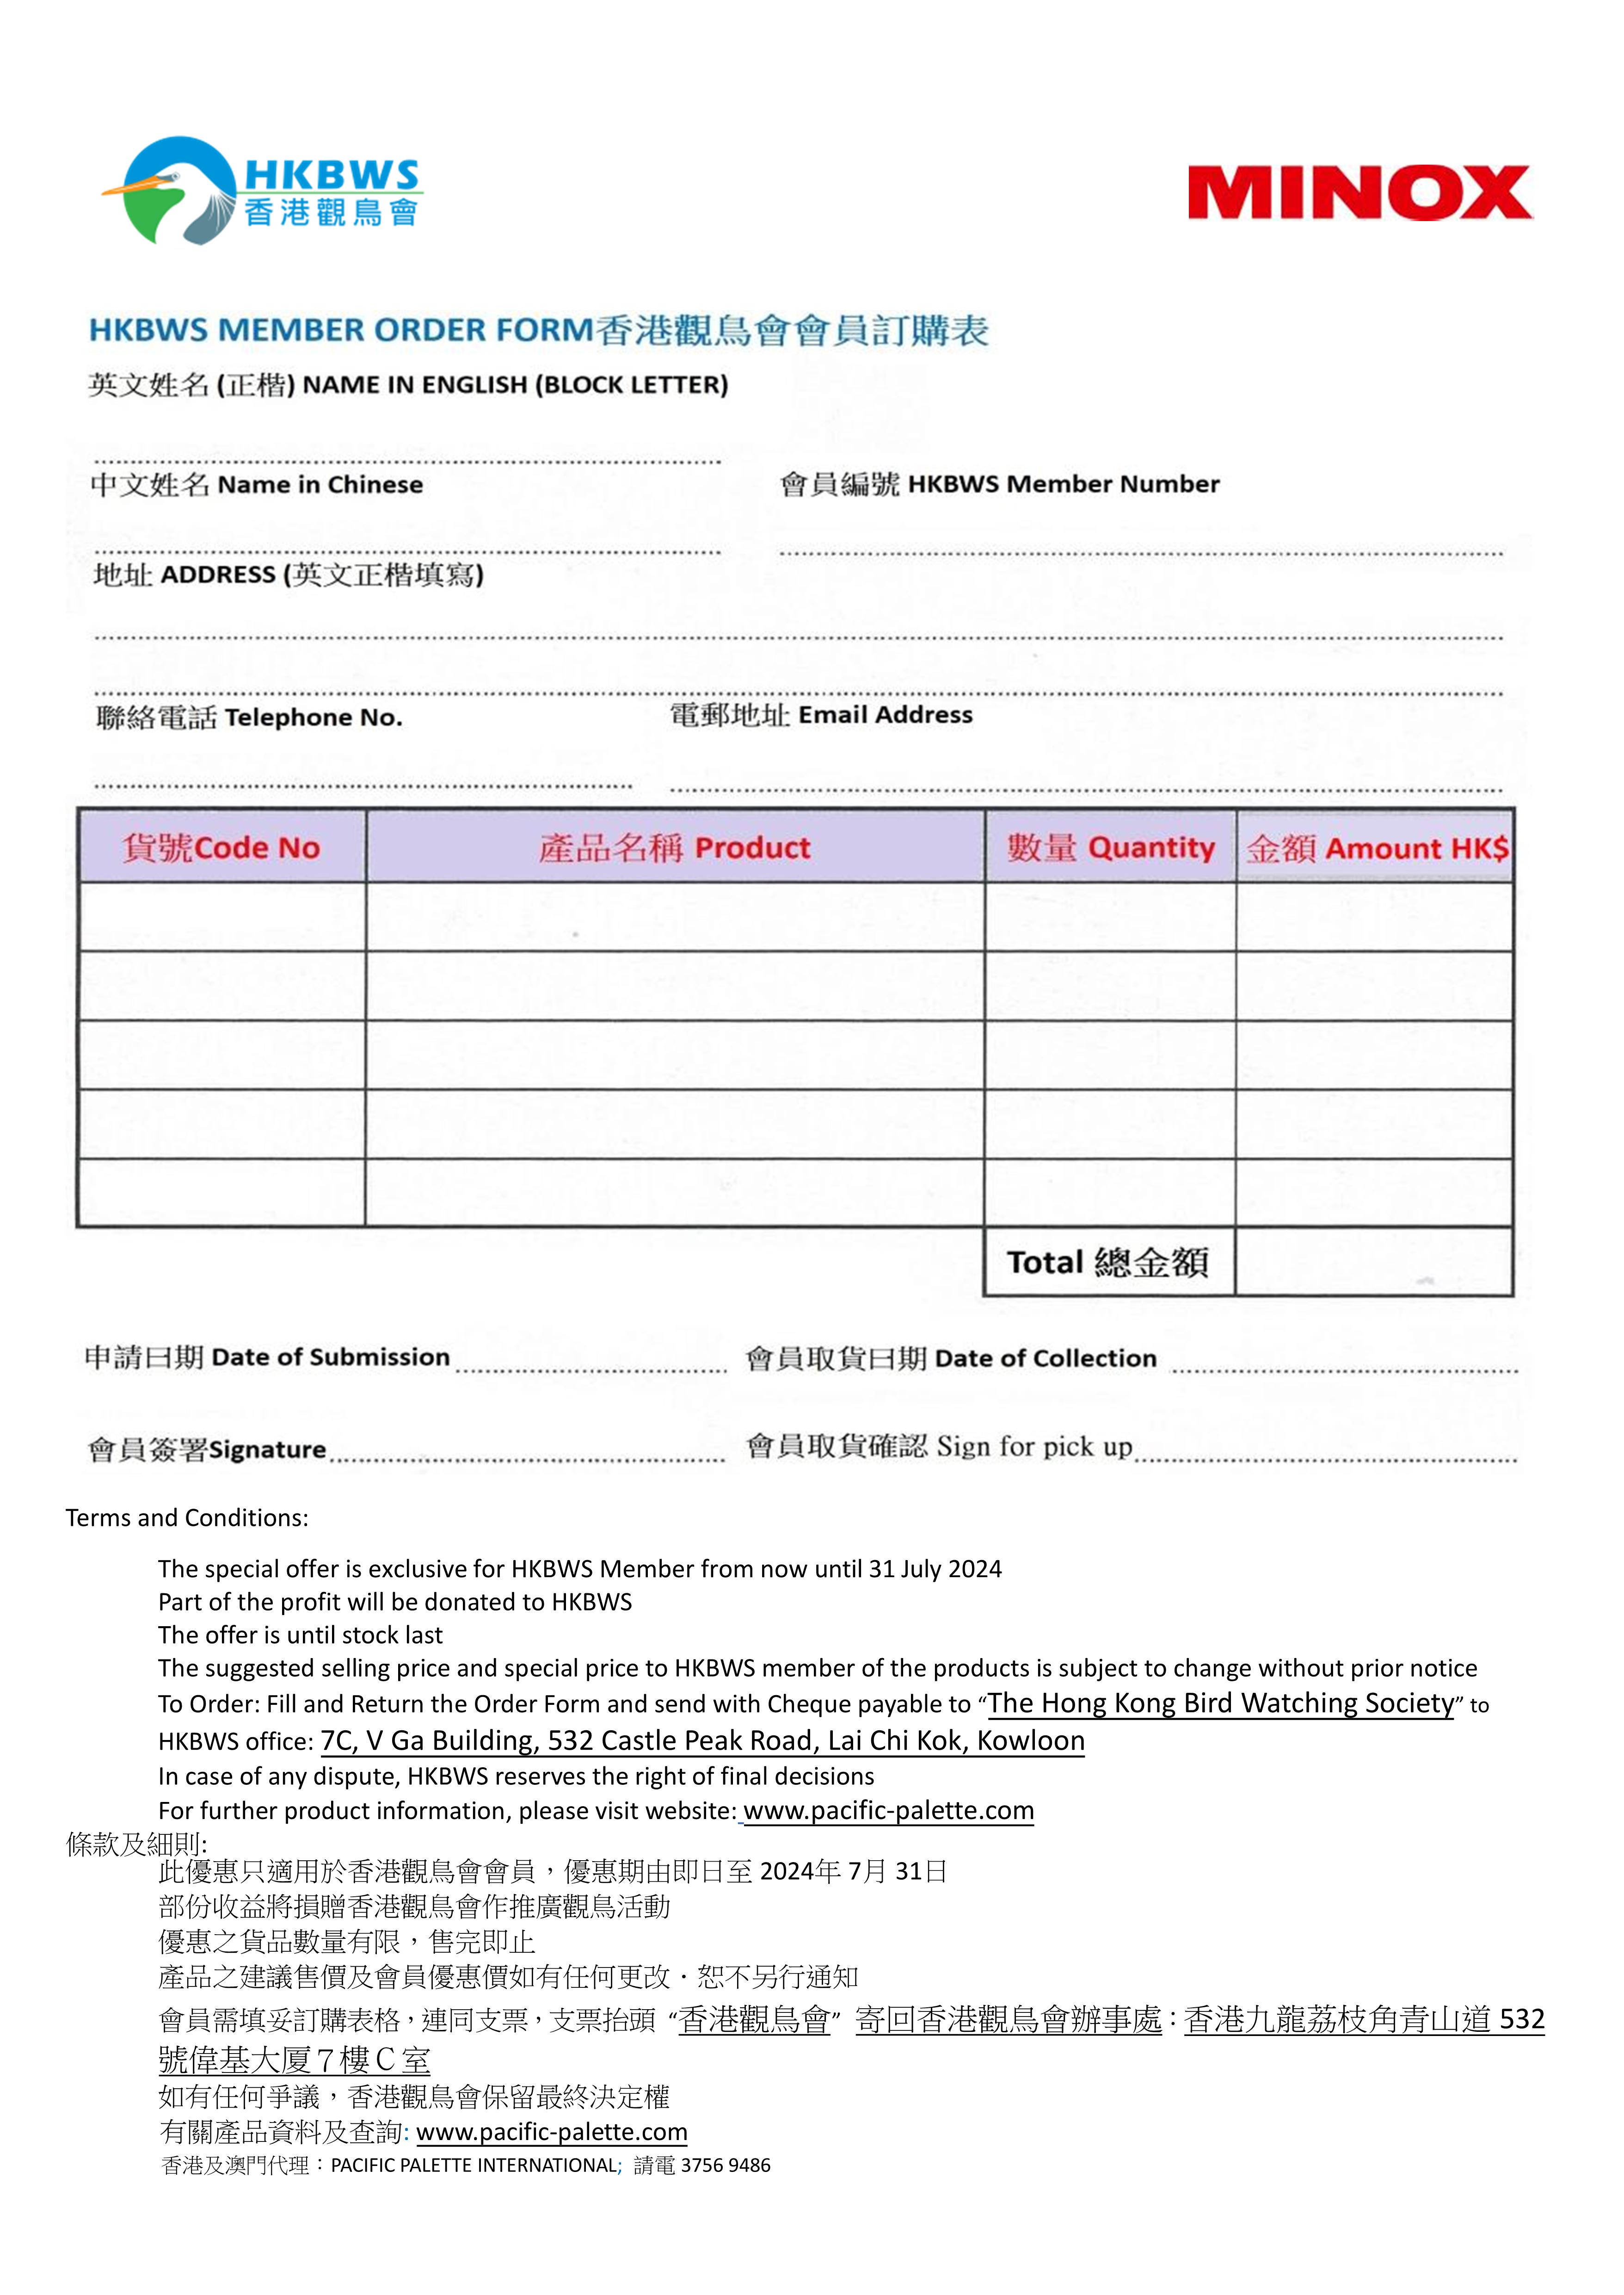 HKBWS Order Form May July 2024